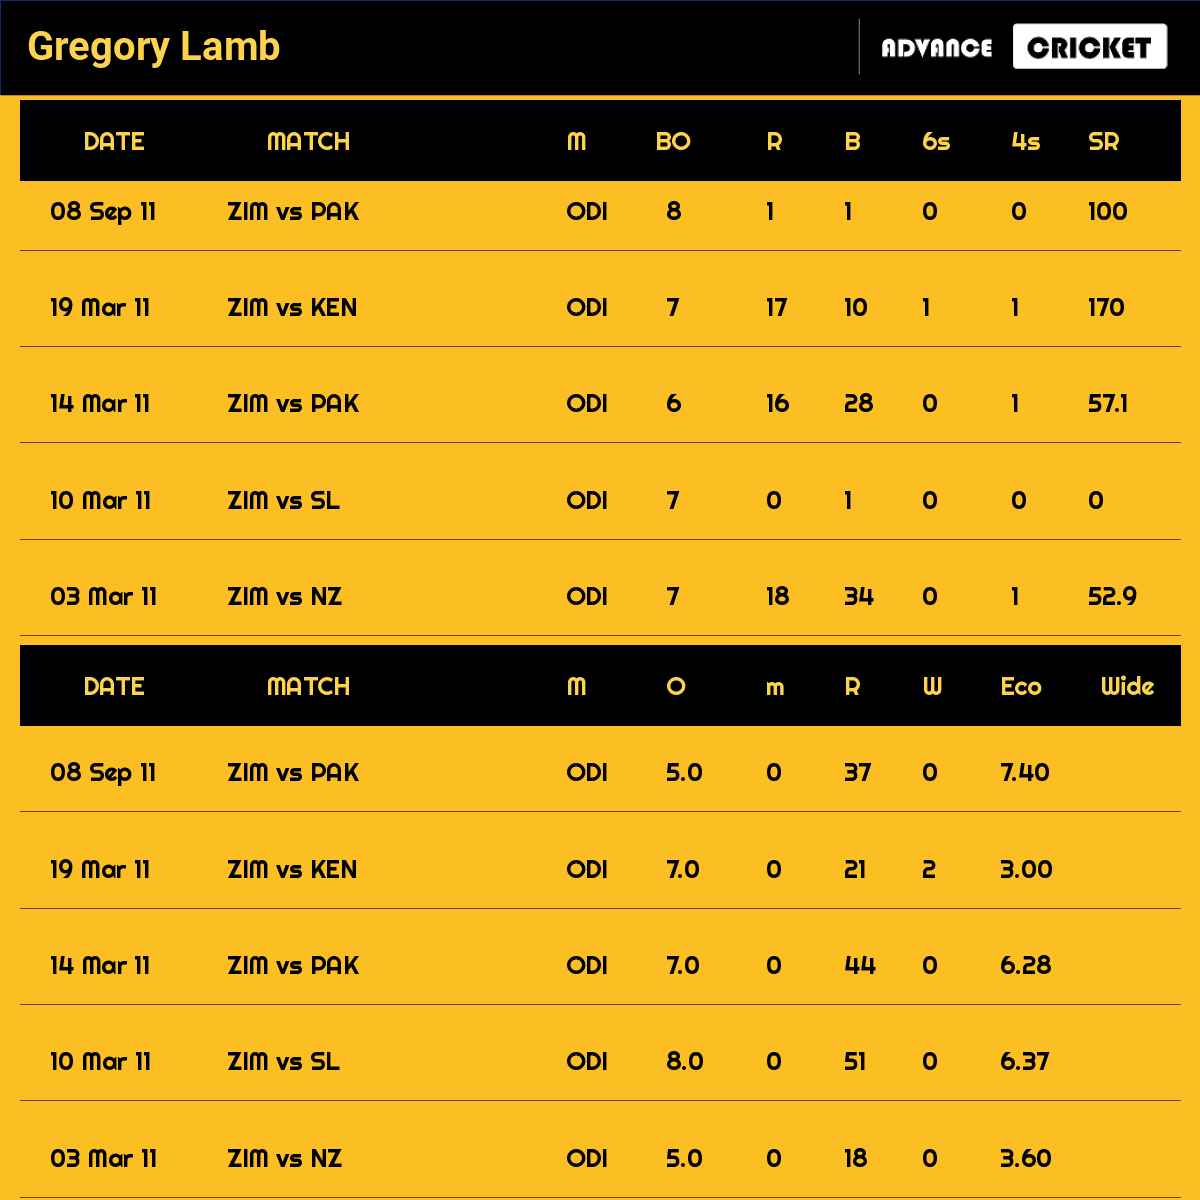 Gregory Lamb recent matches